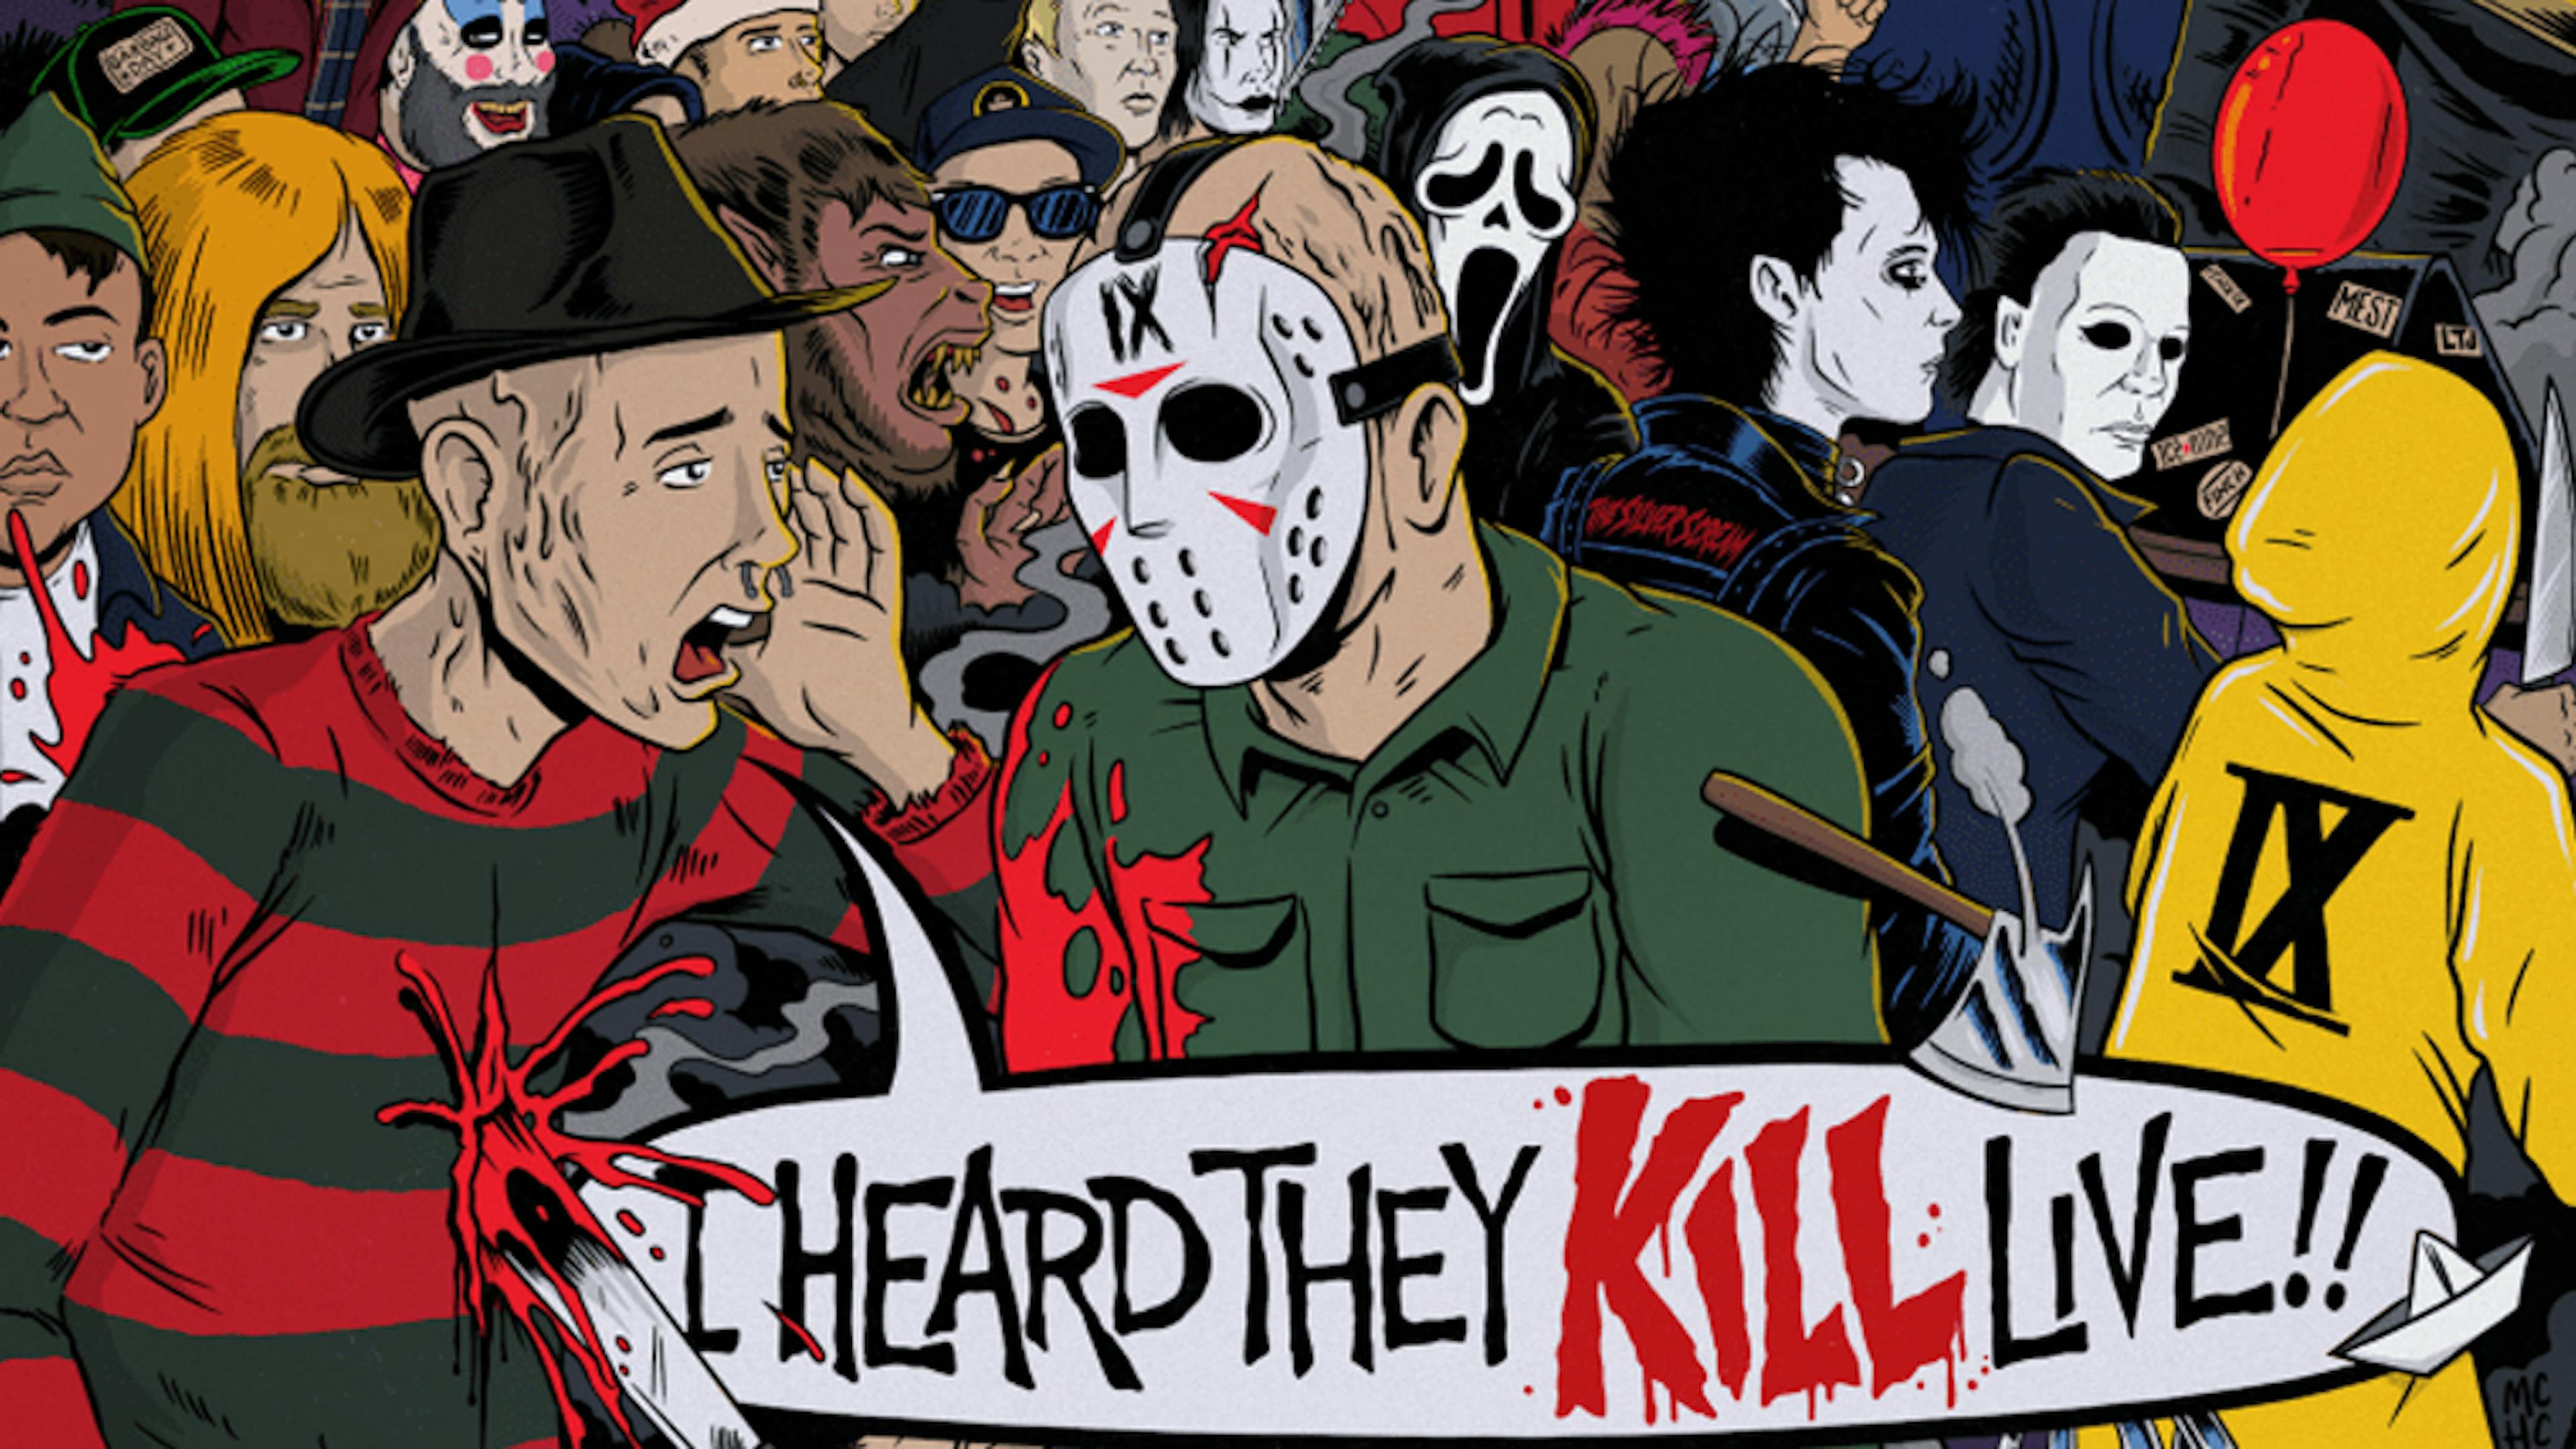 Album Review: Ice Nine Kills – I Heard They KILL Live!!